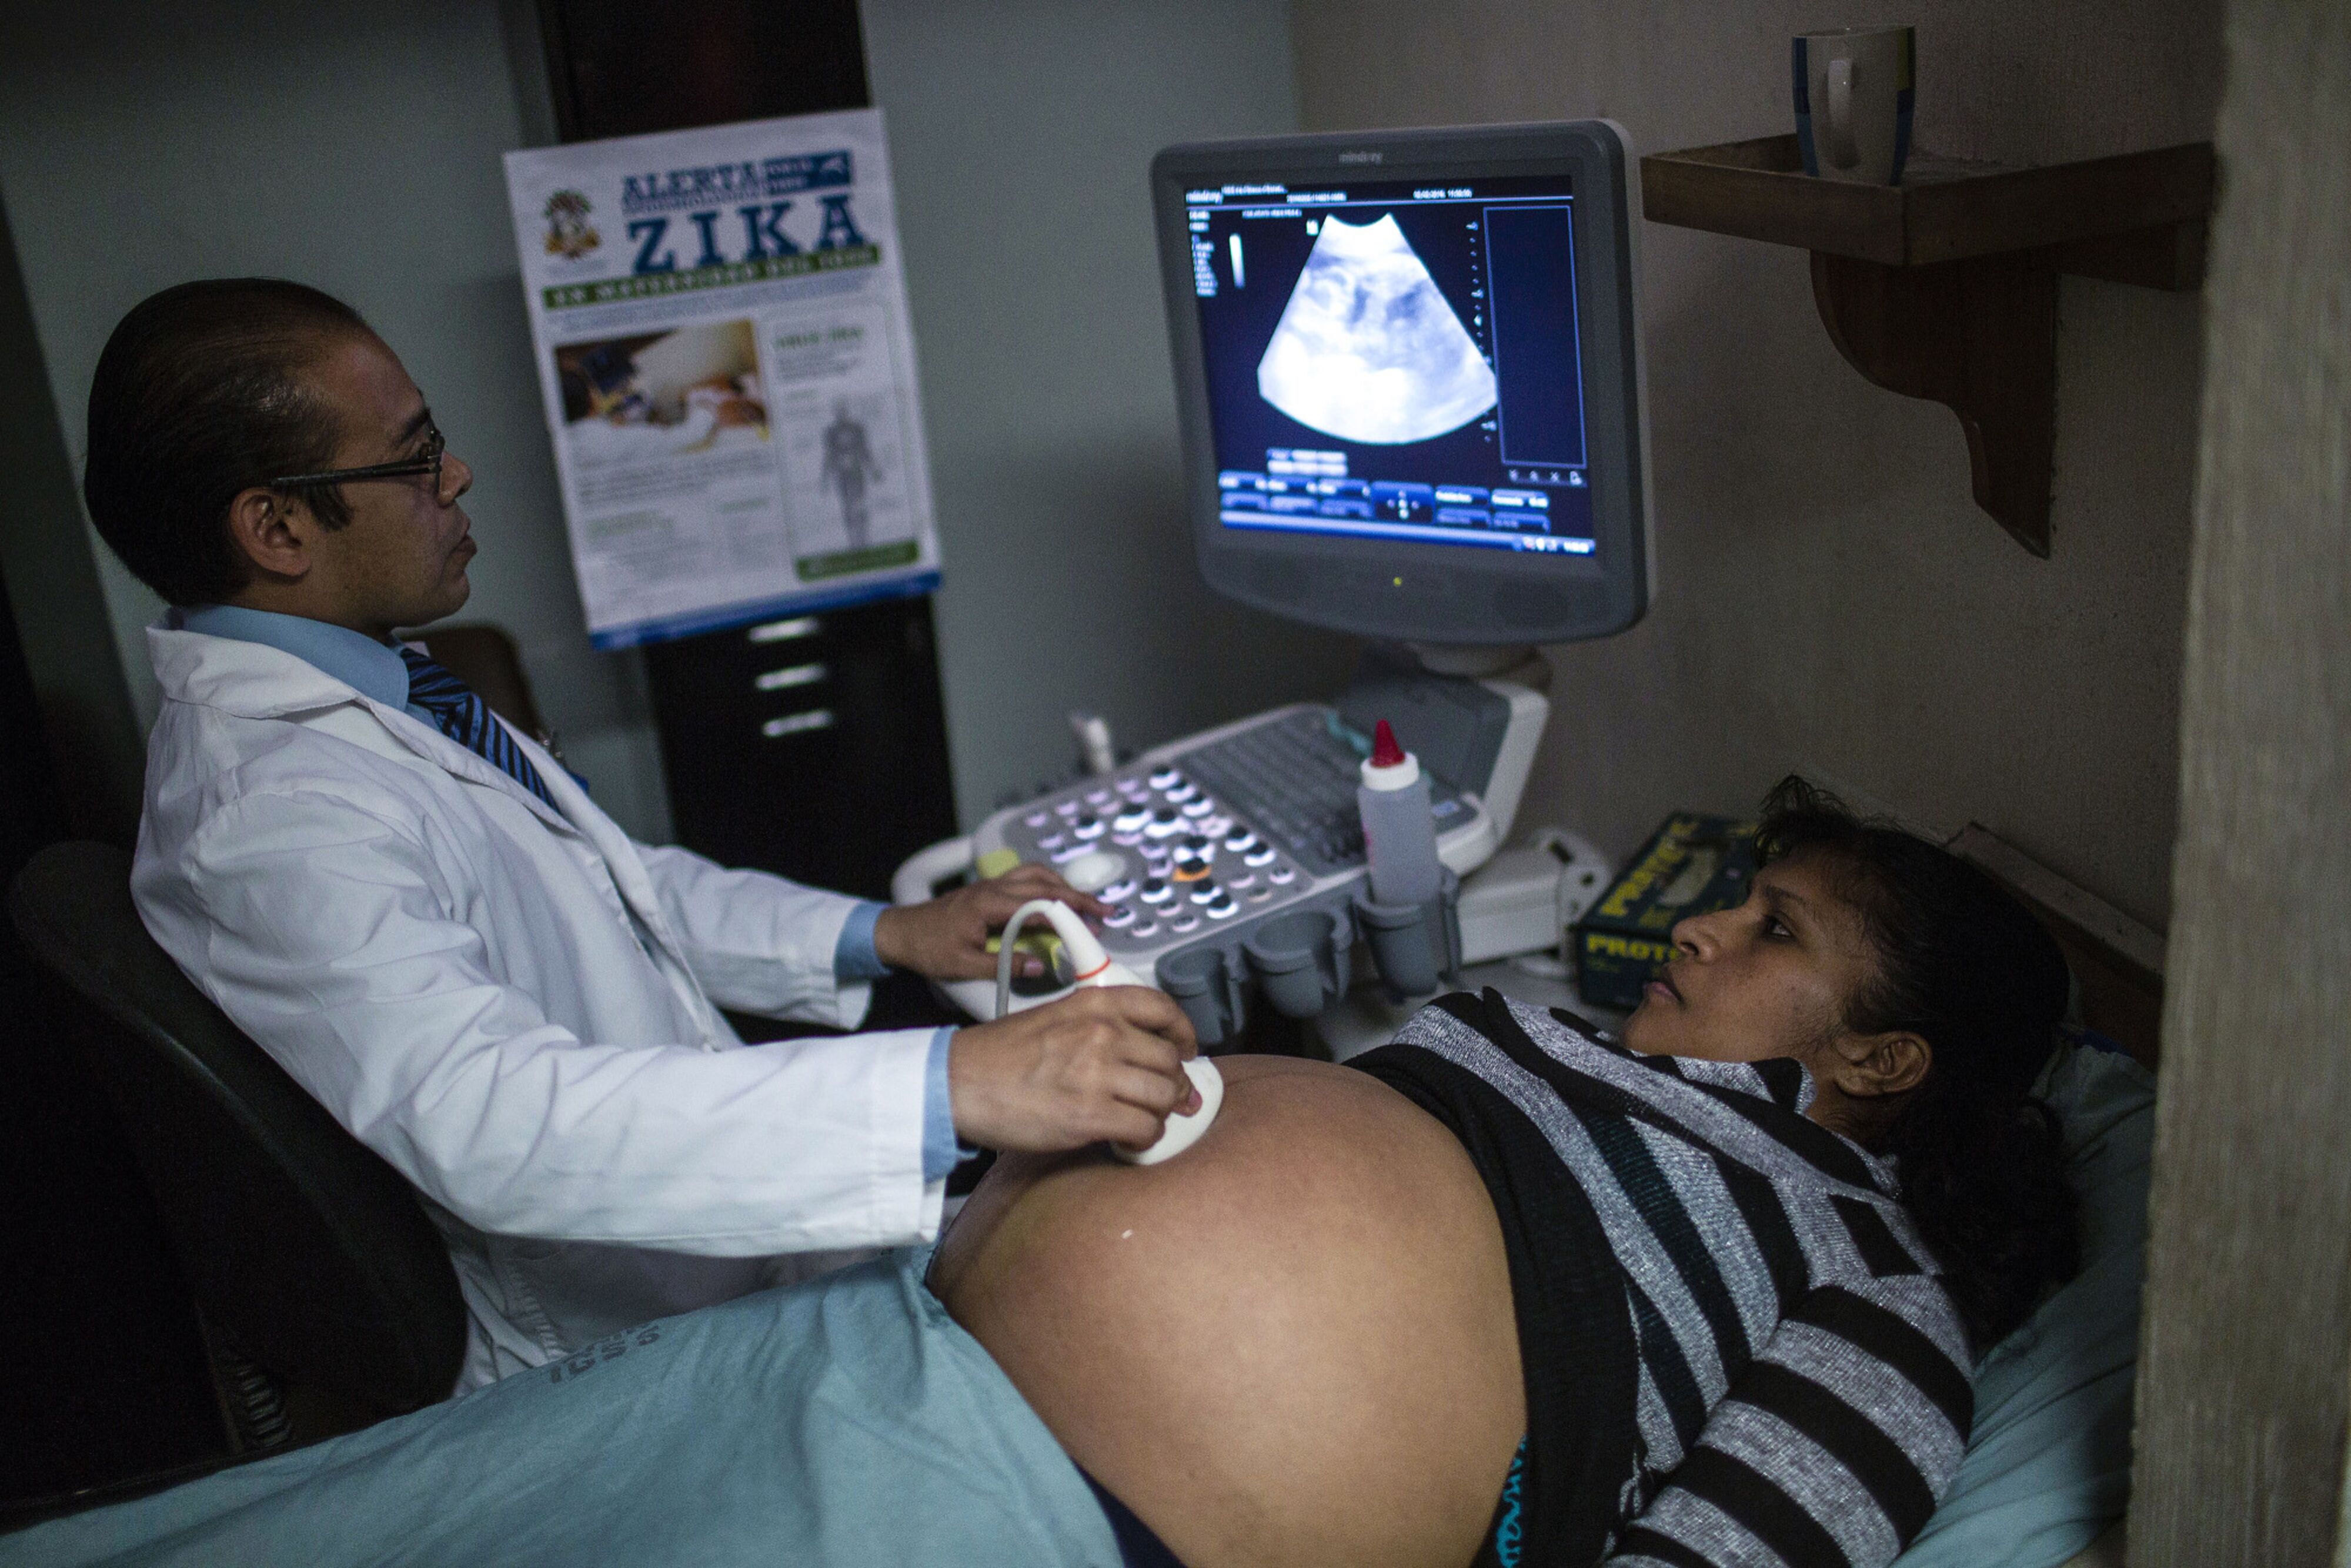 La FDA aprueba un kit de inseminación artificial “casero” por US$129, FDA, Inseminación Artificial, Casero, Aprobación